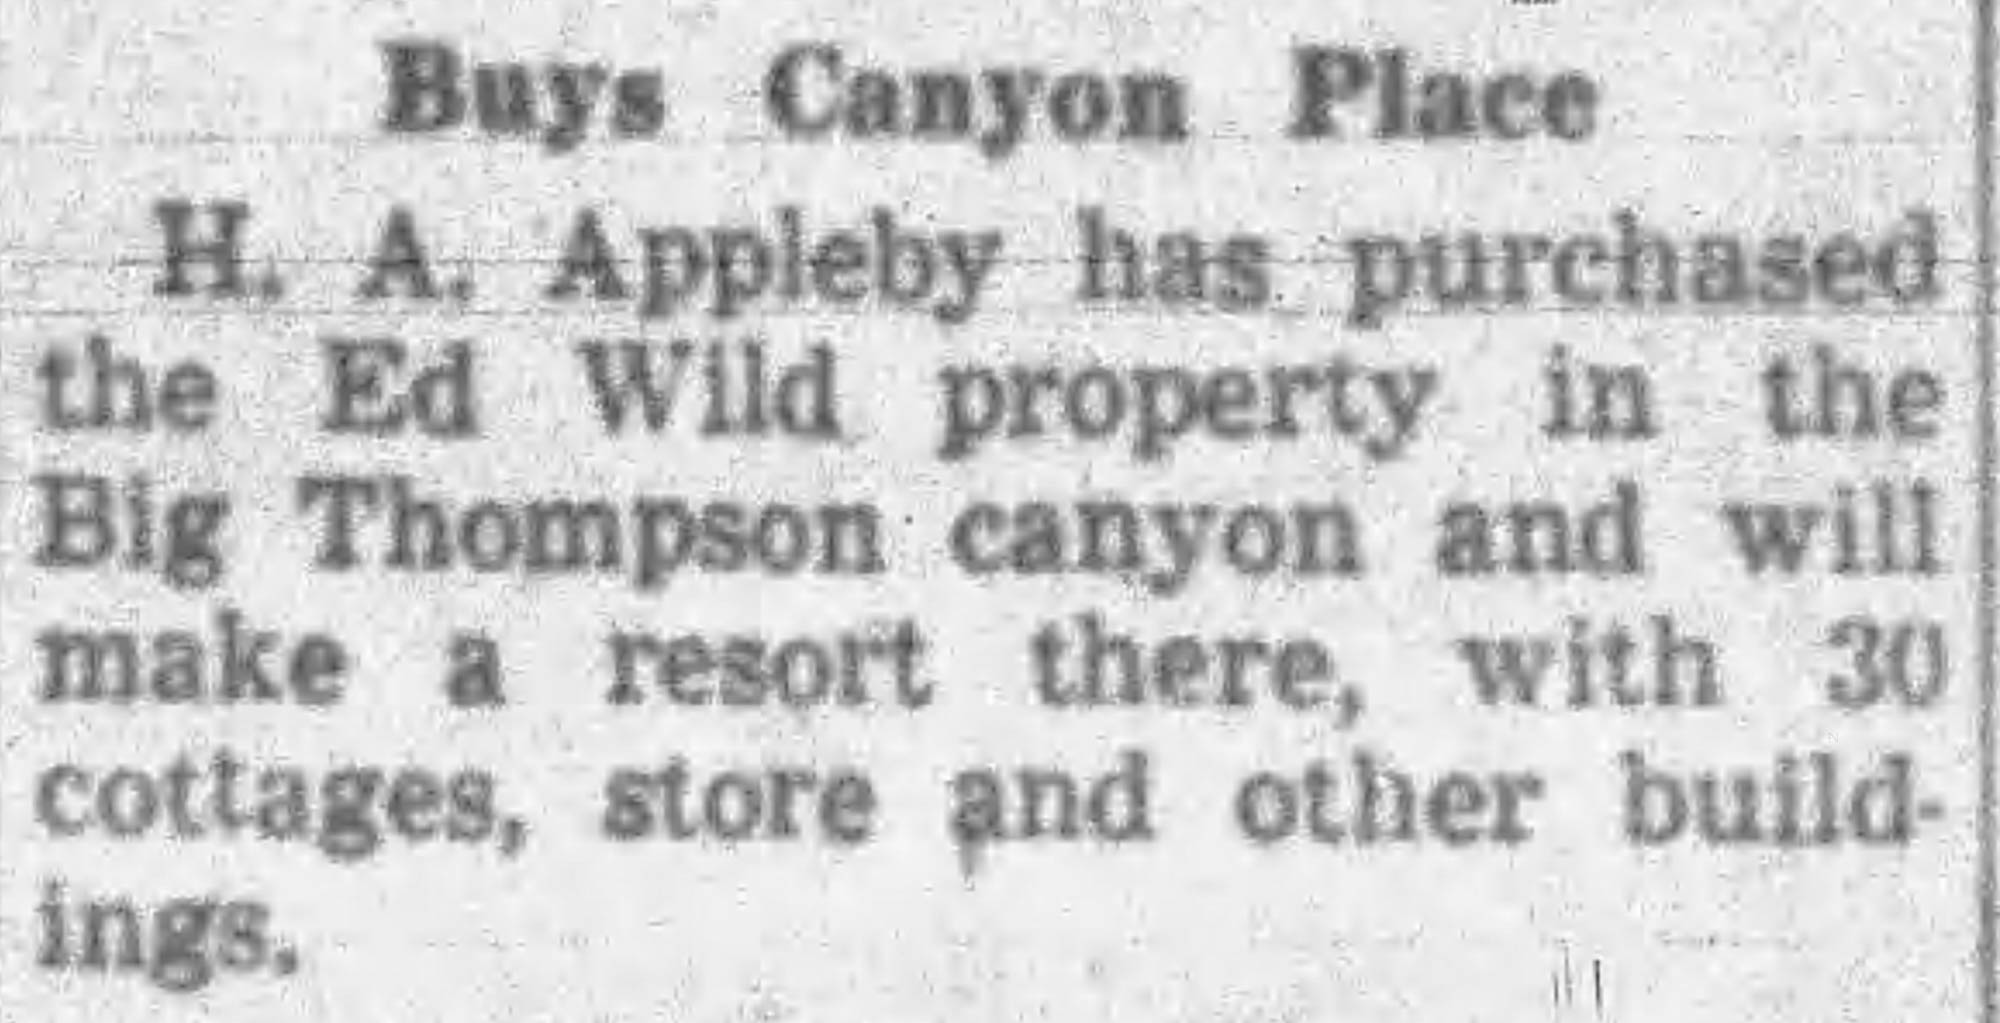 Idlewild Lodge - idlewildlodge.github.io - 1946-09-13 - Fort Collins Coloradan - Hubert Appleby Purchases The Ed Wild Property